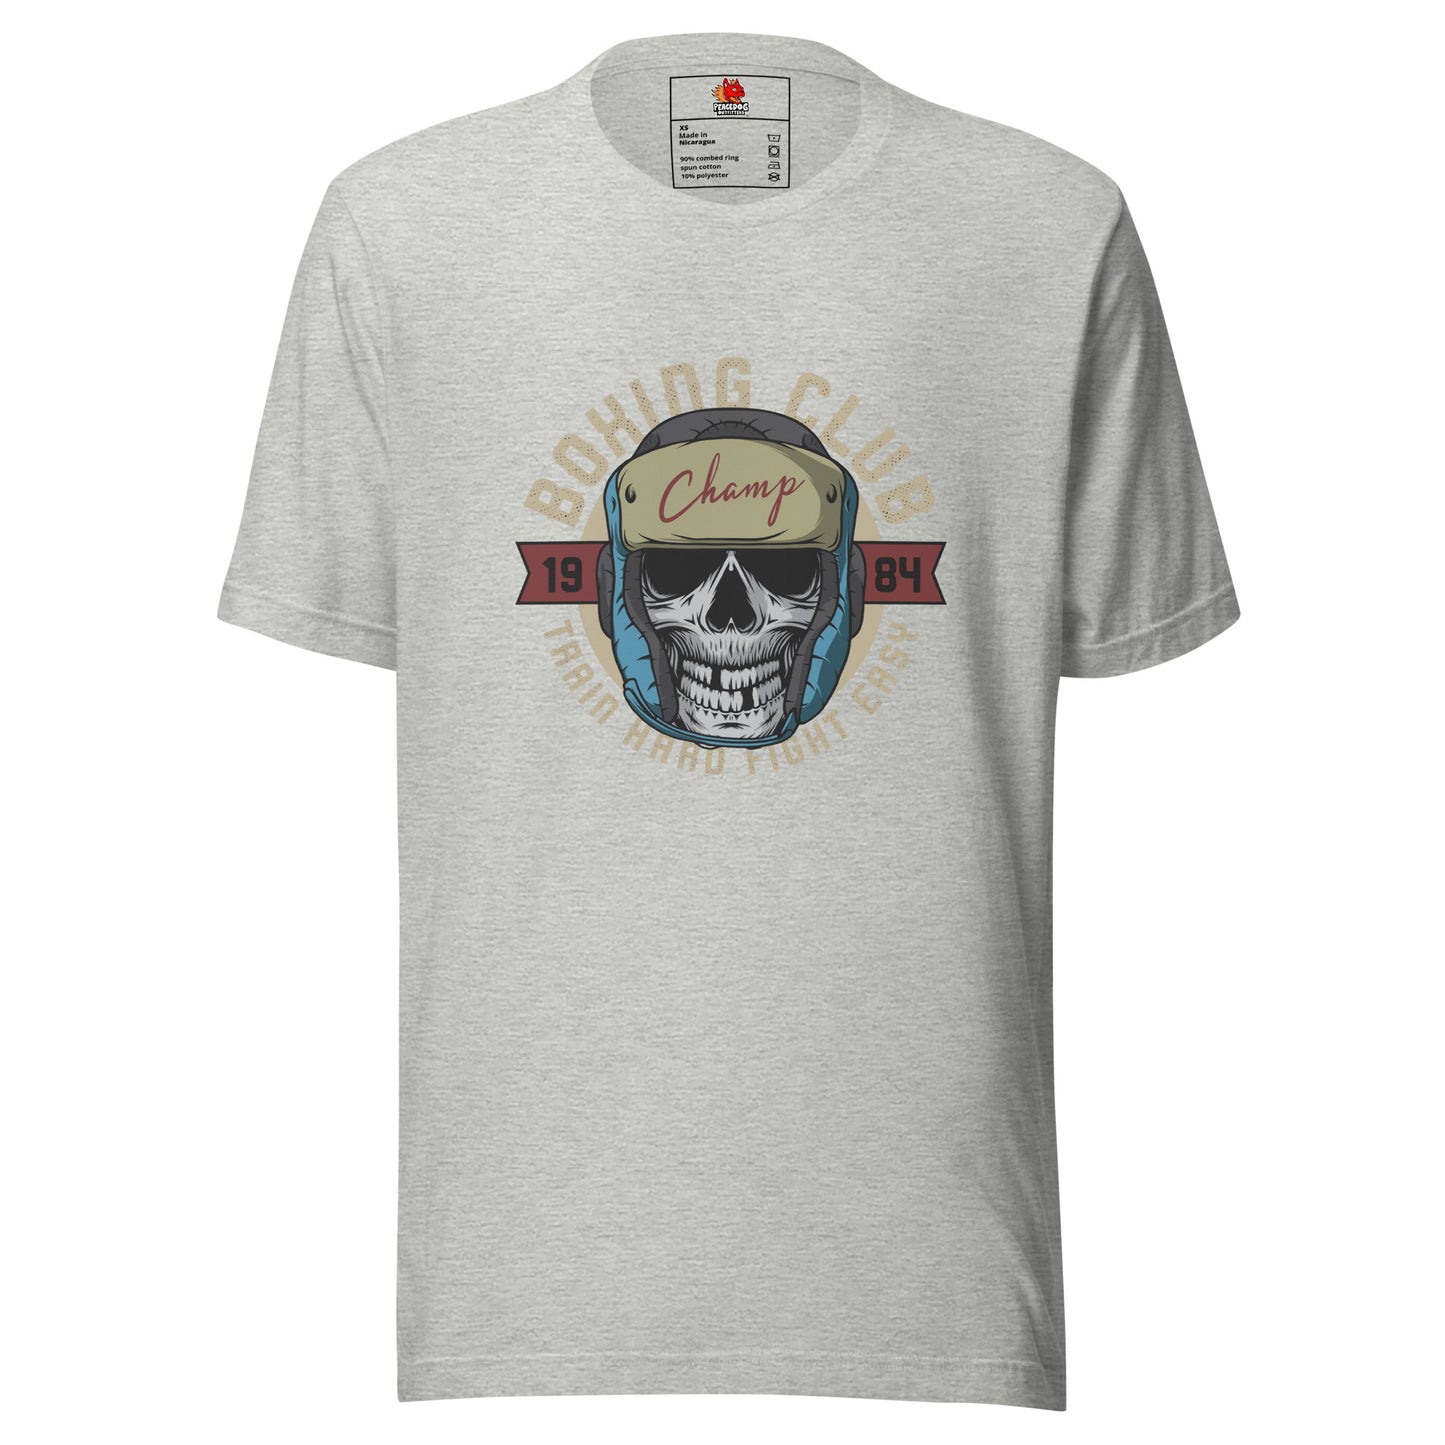 Boxing Club Skull T-shirt